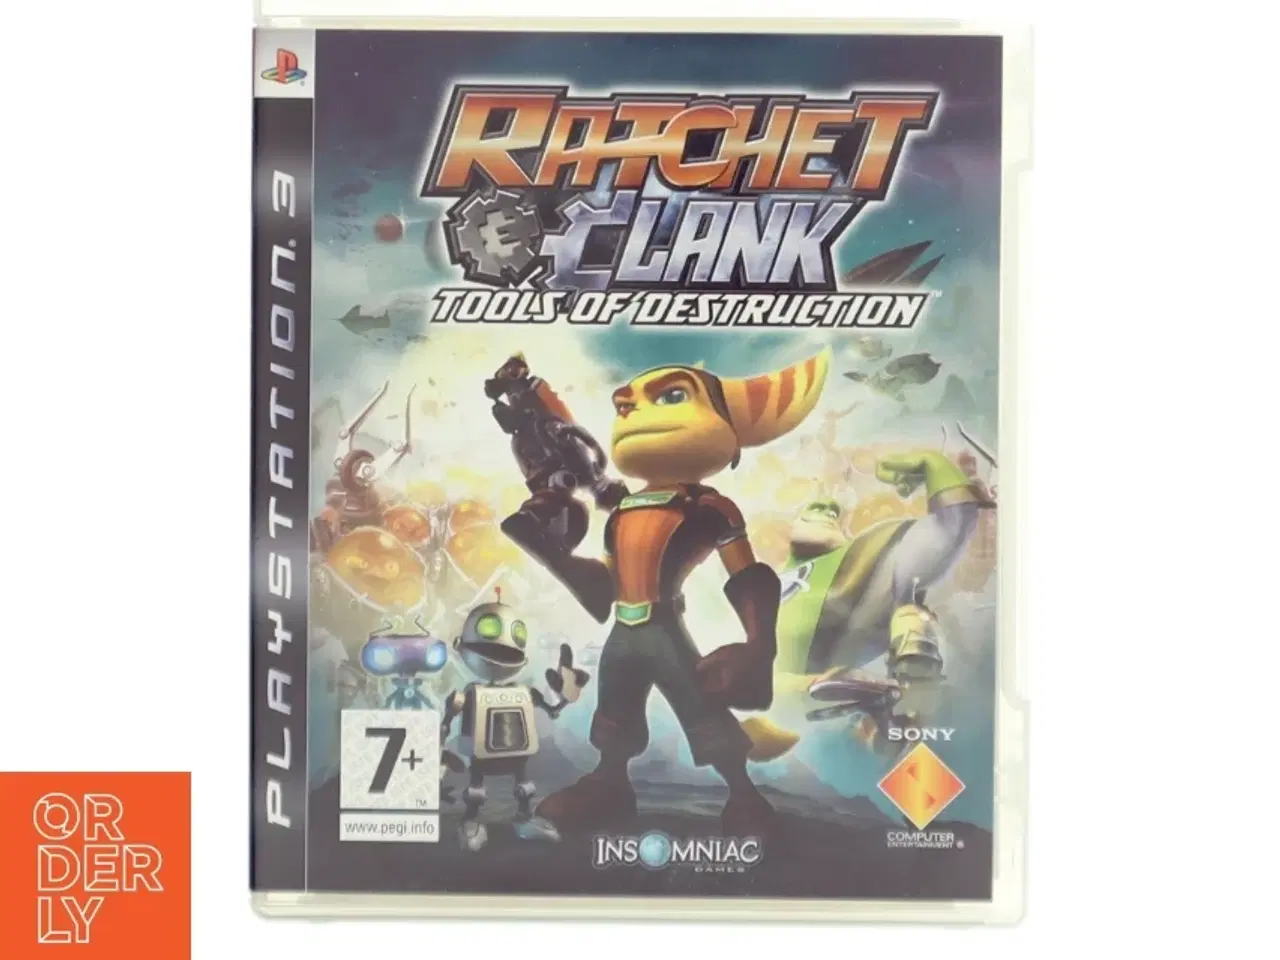 Billede 1 - Ratchet & Clank: Tools of Destruction PS3 spil fra Sony